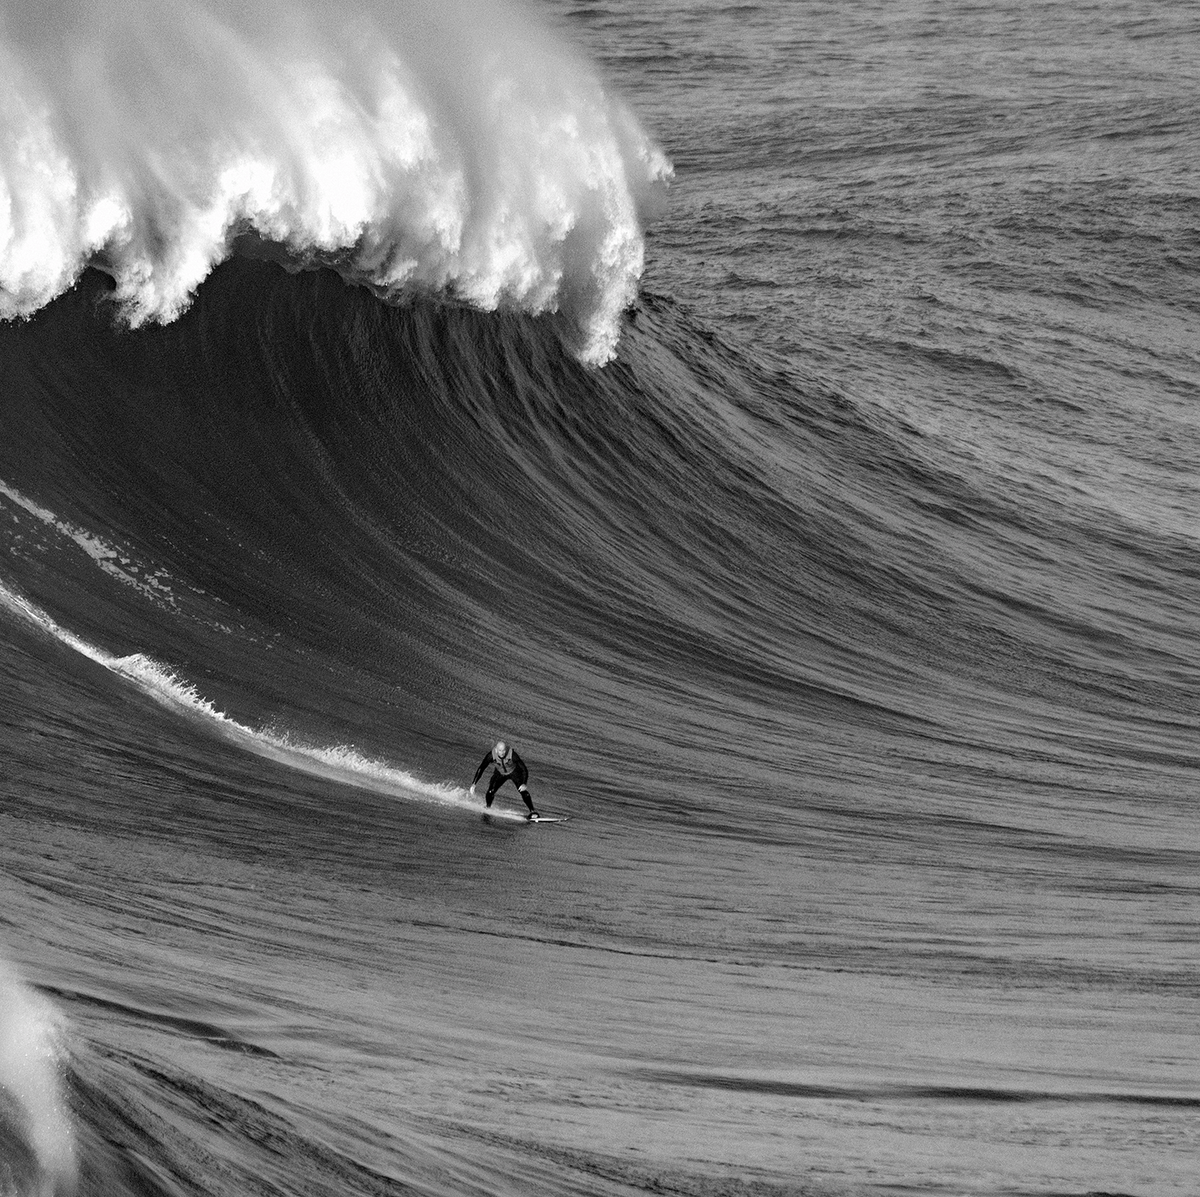 Dark Places: Blind Surfer Matt Formston Feels the Danger